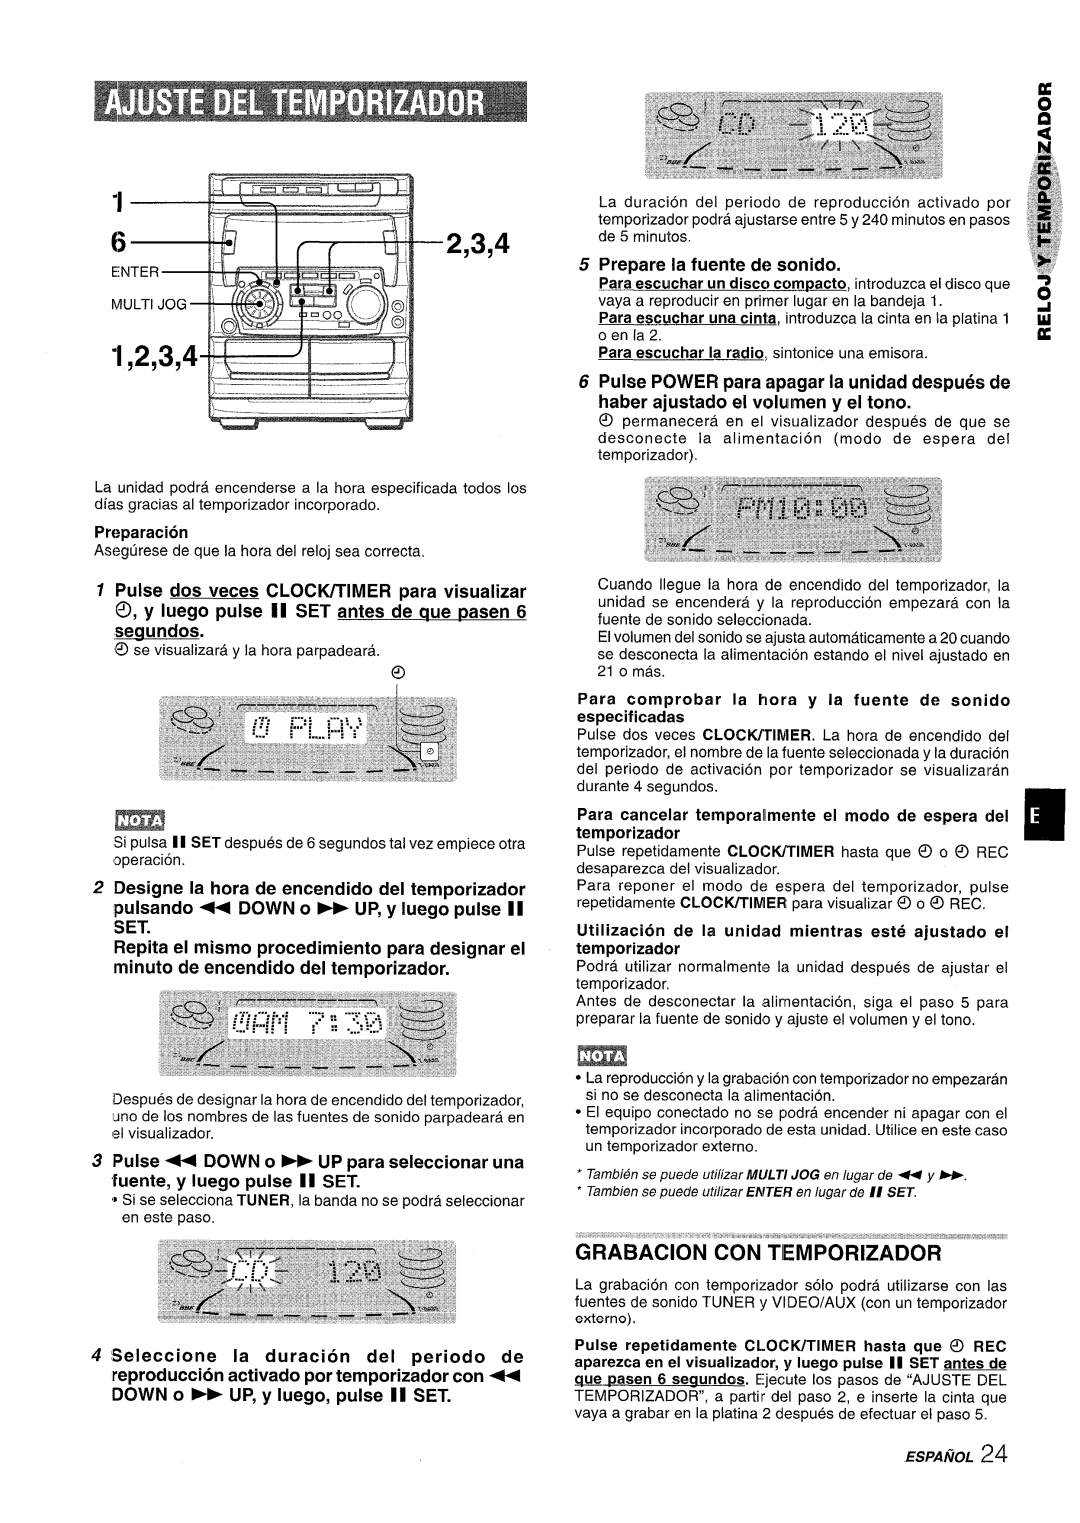 Sony NSX-A707 manual DOWN 0- UP, y Iuego, pulse II SET, Prepare la fuente de sonido, haber ajustado el volulmeny el tono 